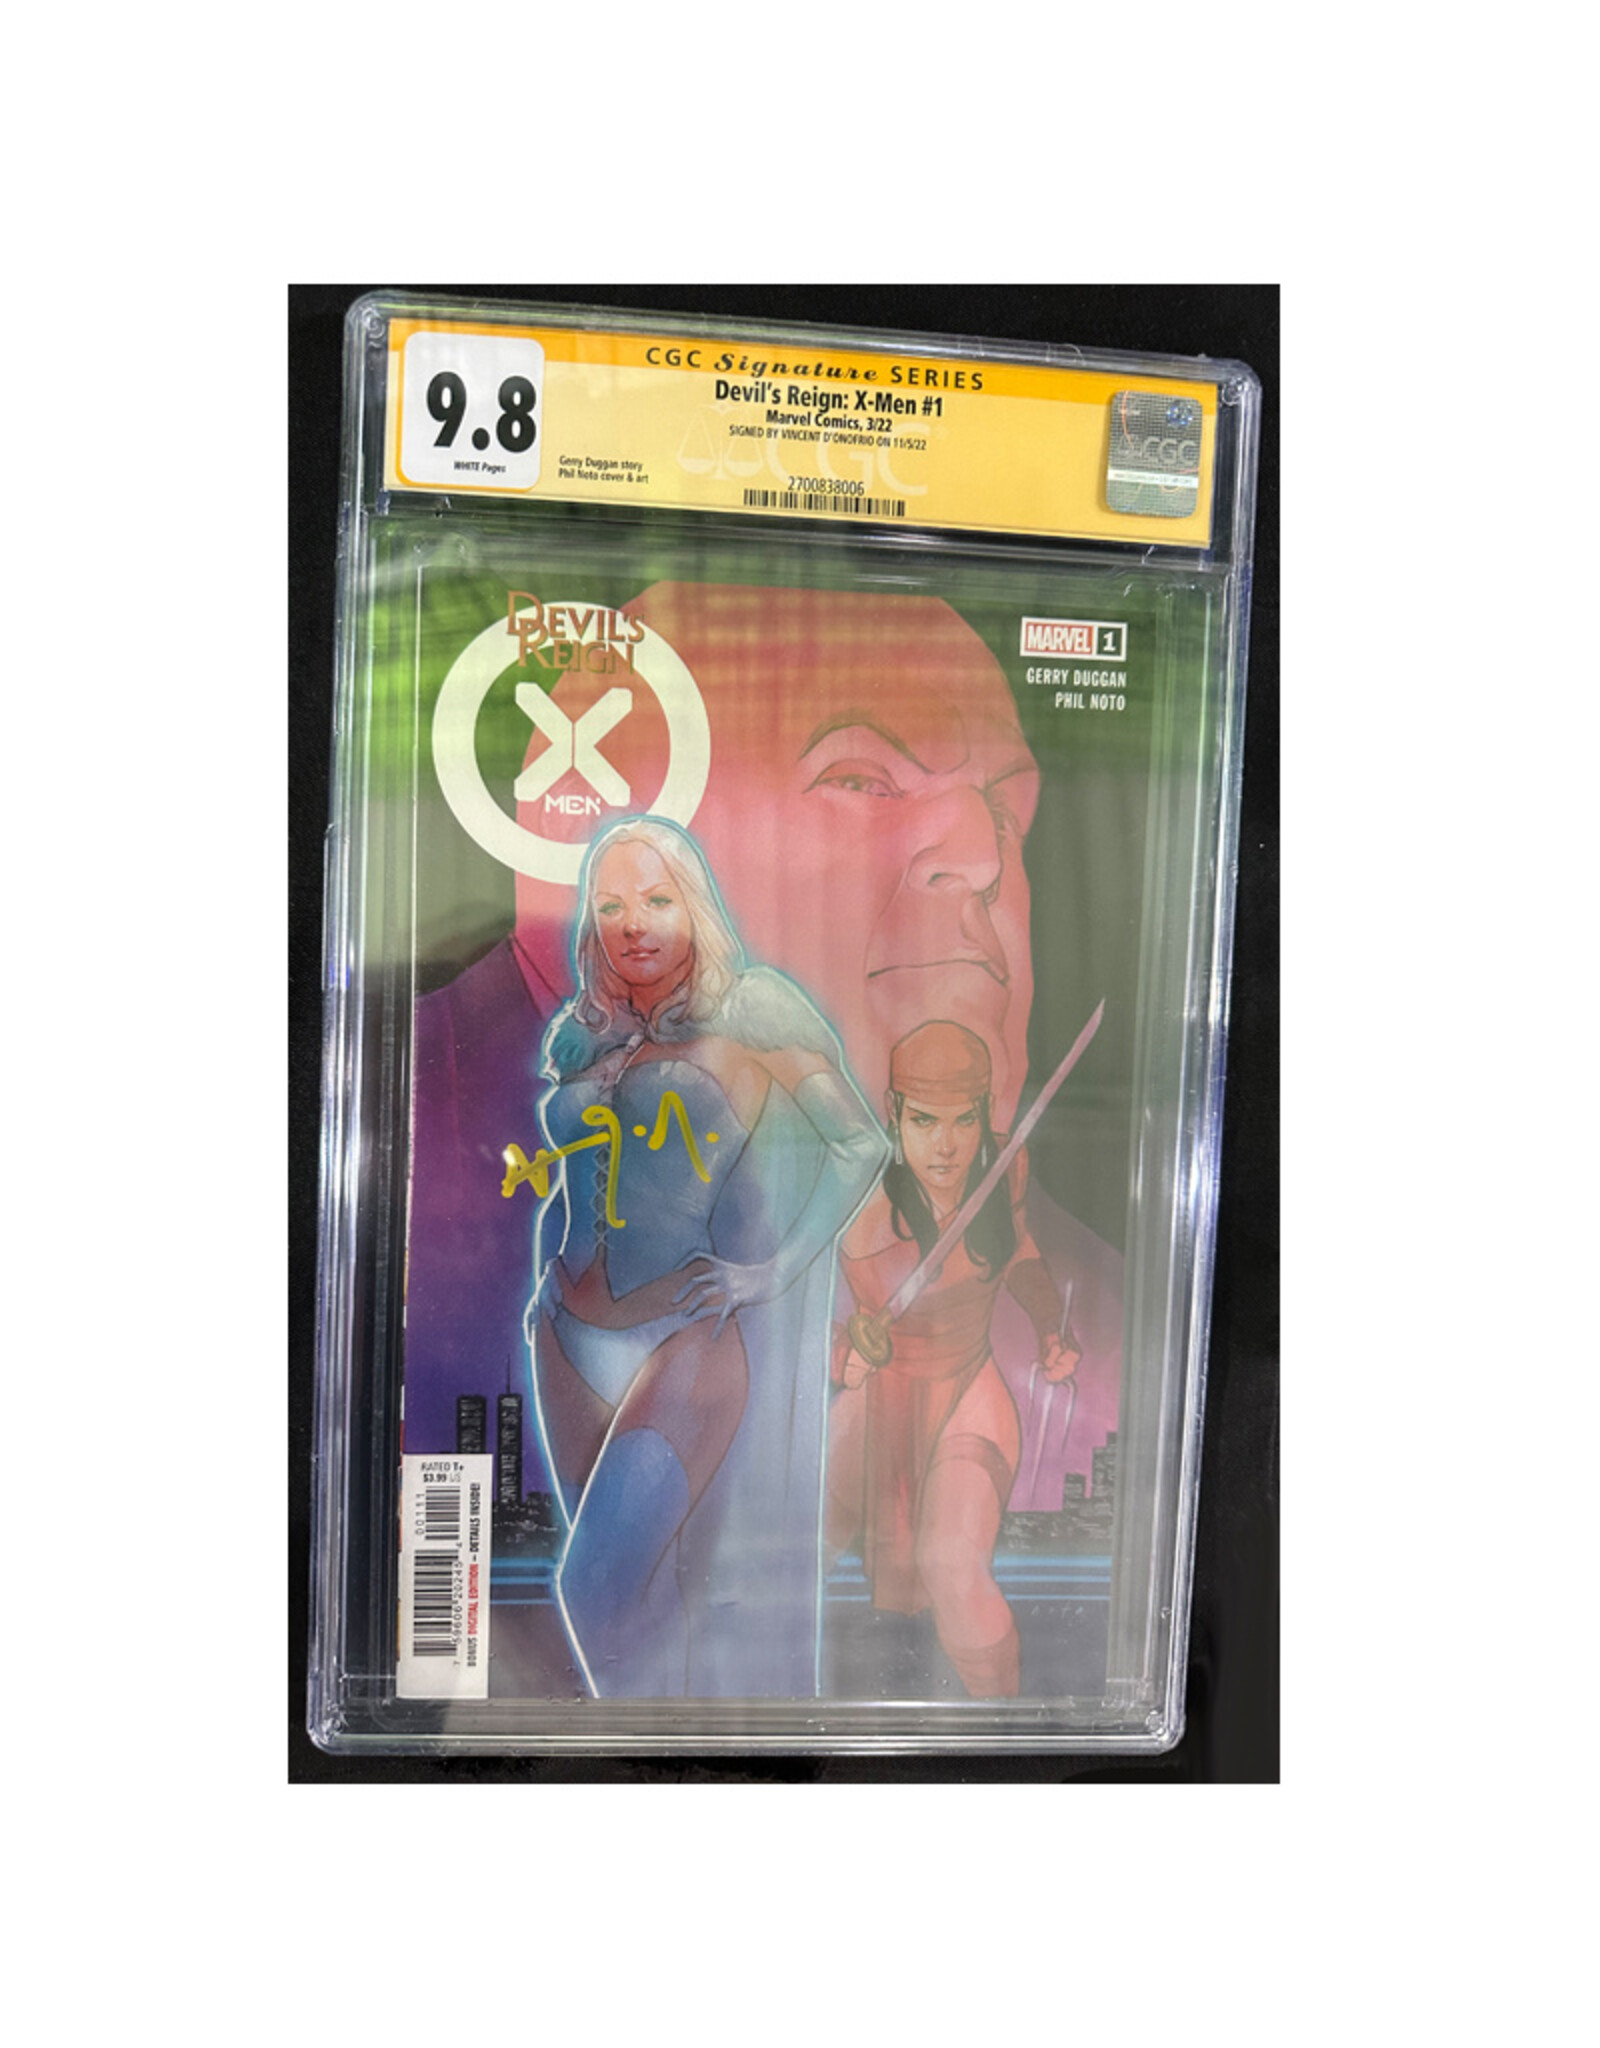 Marvel Comics Devil's Reign: X-men #1 signed by Vincent D'Onofrio CGC grade 9.8